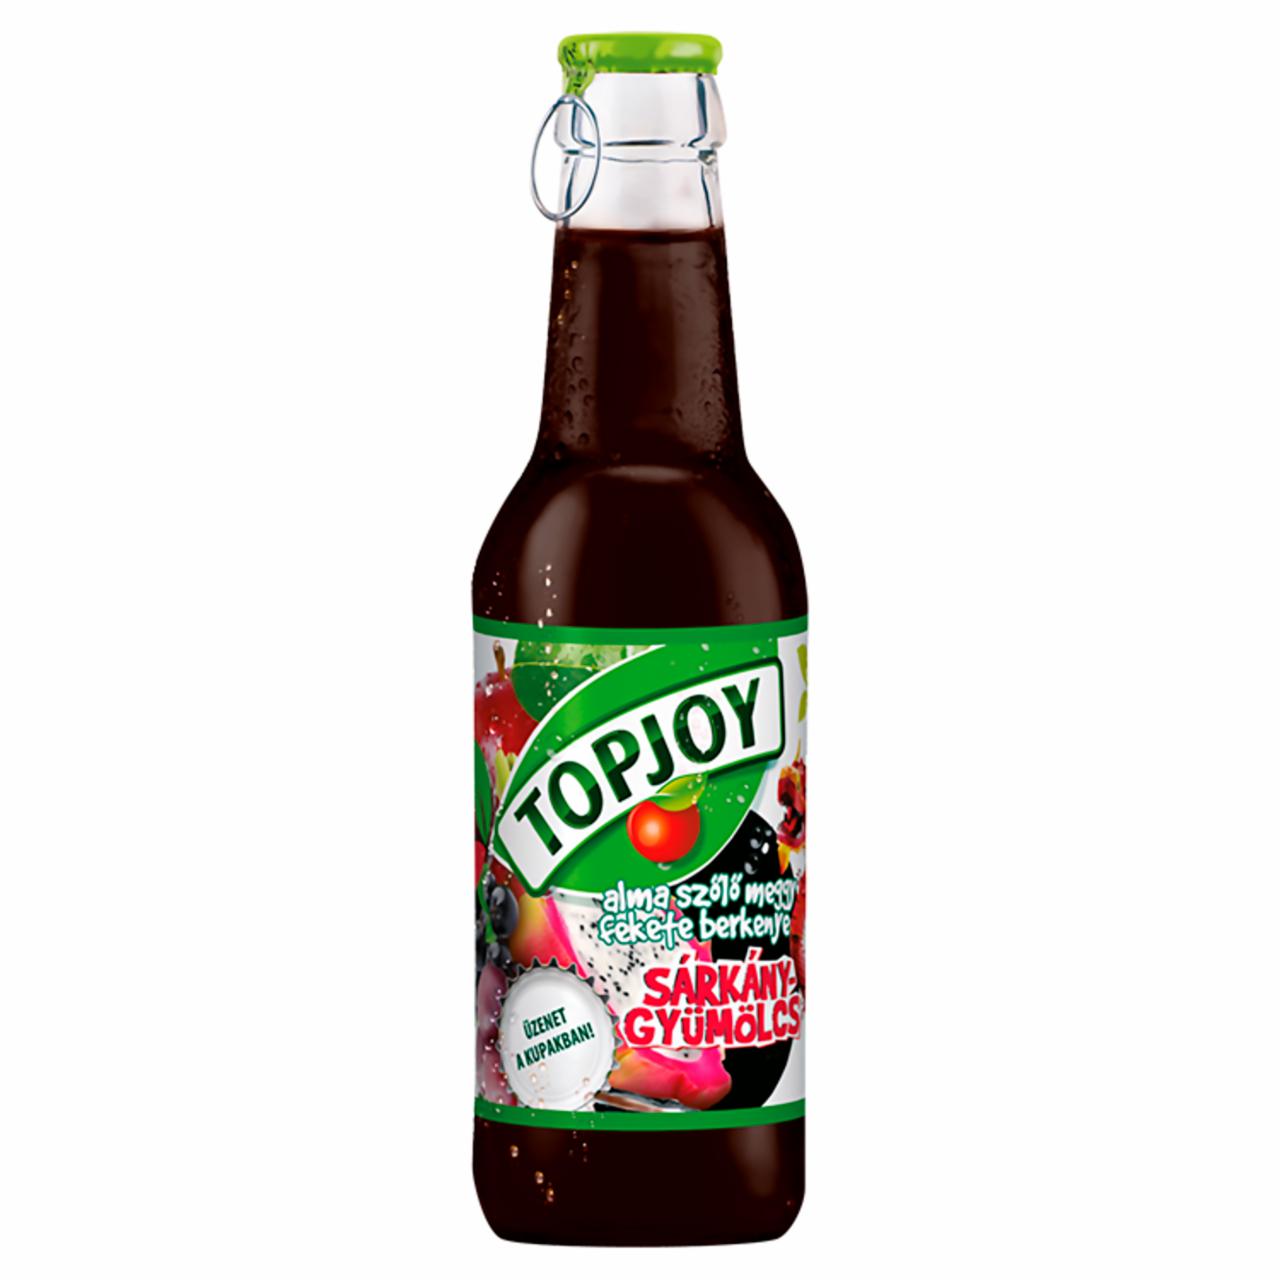 Képek - Topjoy alma-szőlő-meggy-fekete berkenye-sárkánygyümölcs ital 250 ml